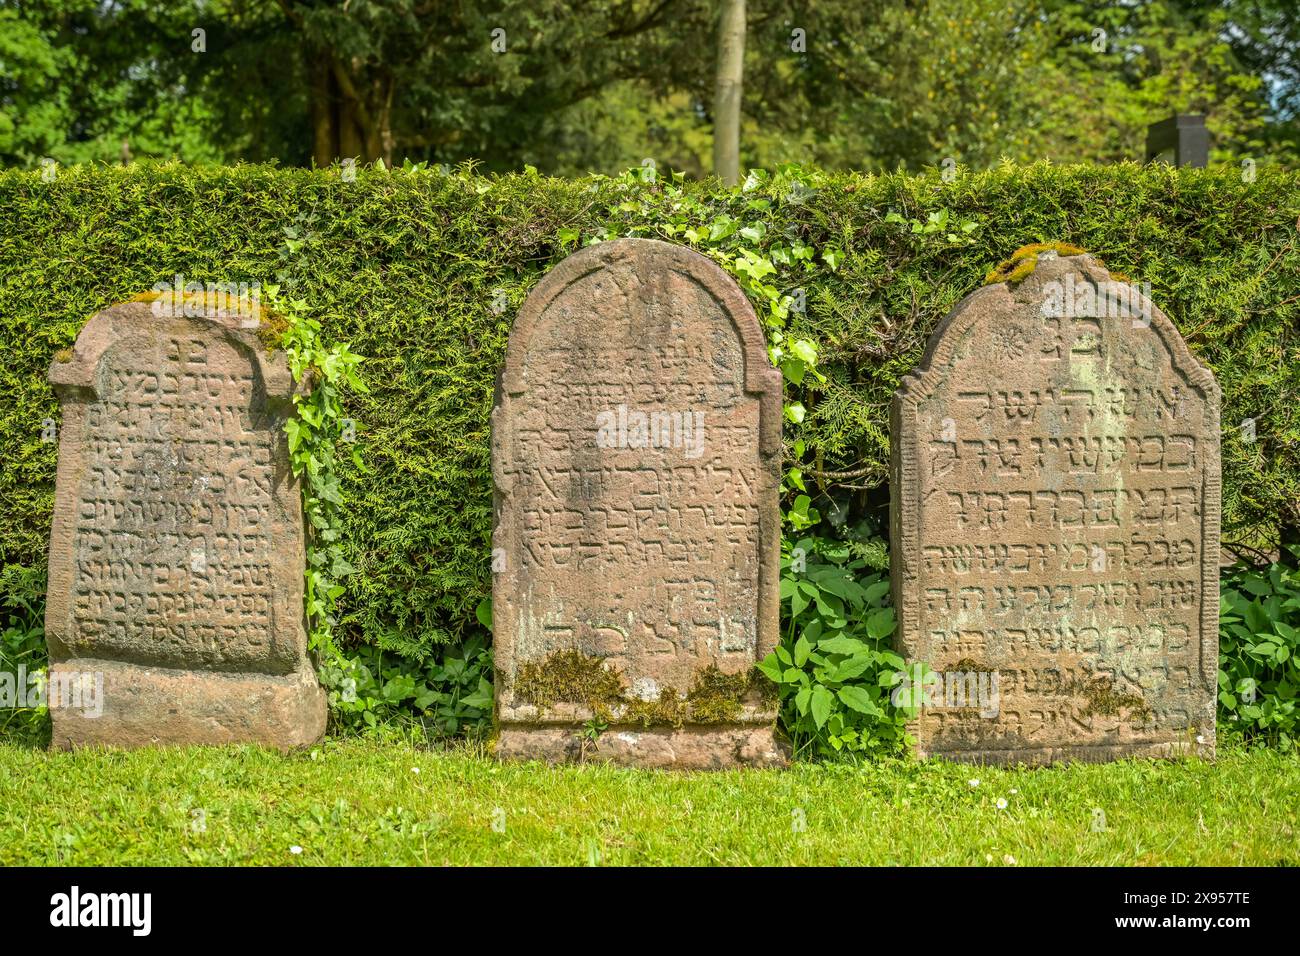 Gravestones, Jewish cemetery, Waldbachfriedhof, Offenburg, Baden-Württemberg, Germany, Grabsteine, jüdischer Friedhof, Waldbachfriedhof, Offenburg, Ba Stock Photo